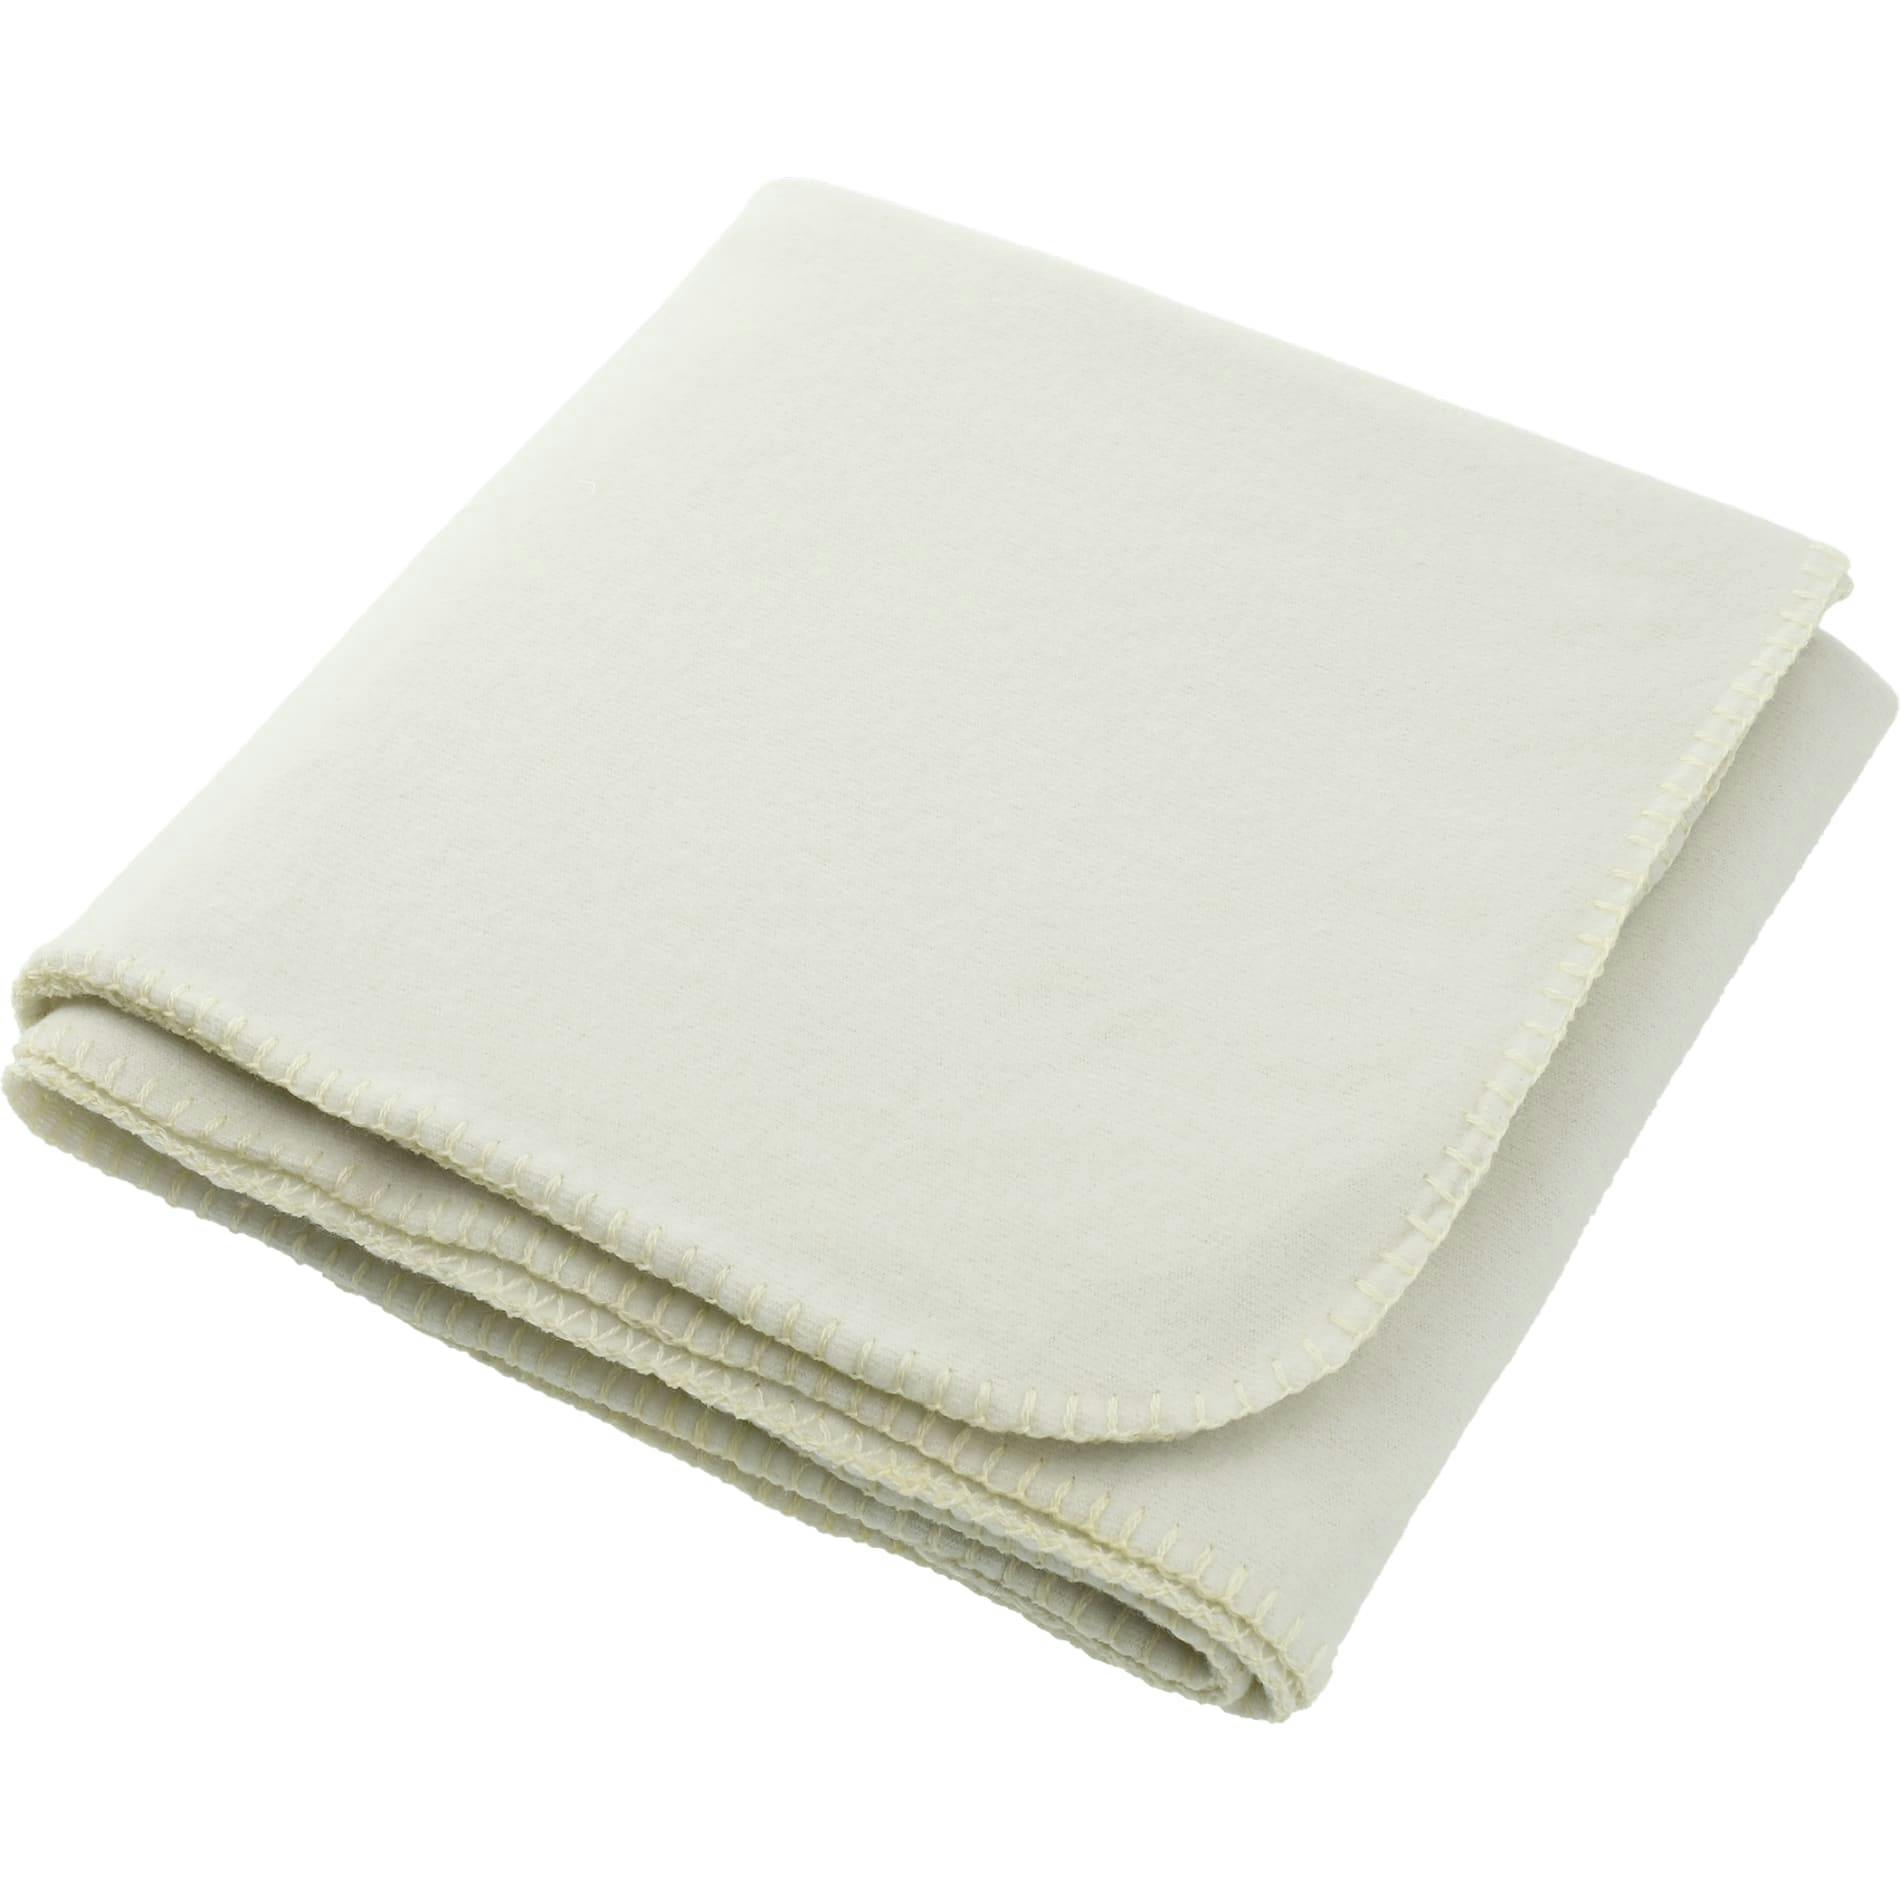 100% Recycled PET Fleece Blanket - additional Image 2